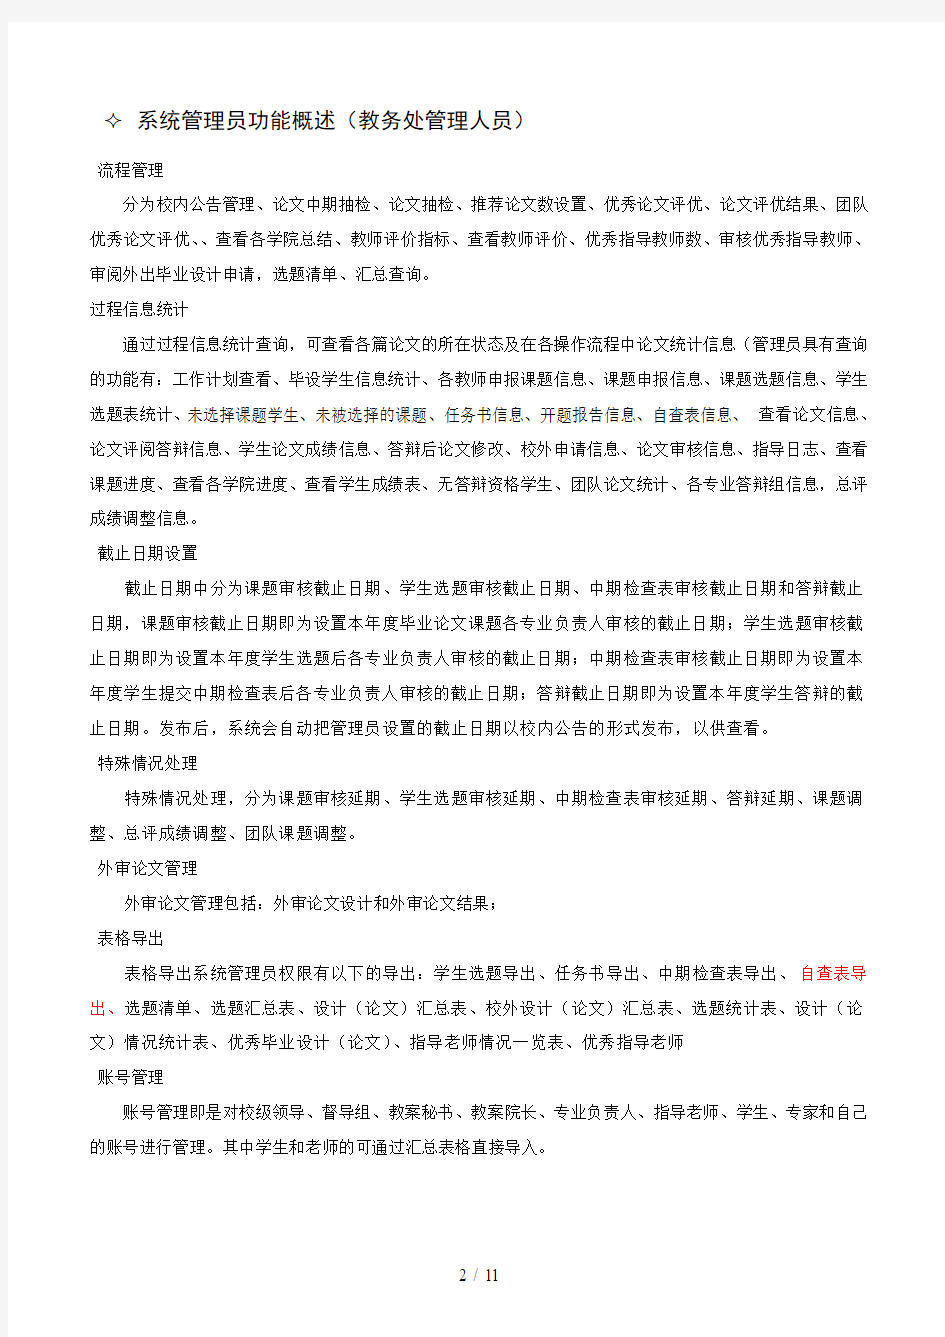 淮阴师范学院毕业设计系统快速使用指南